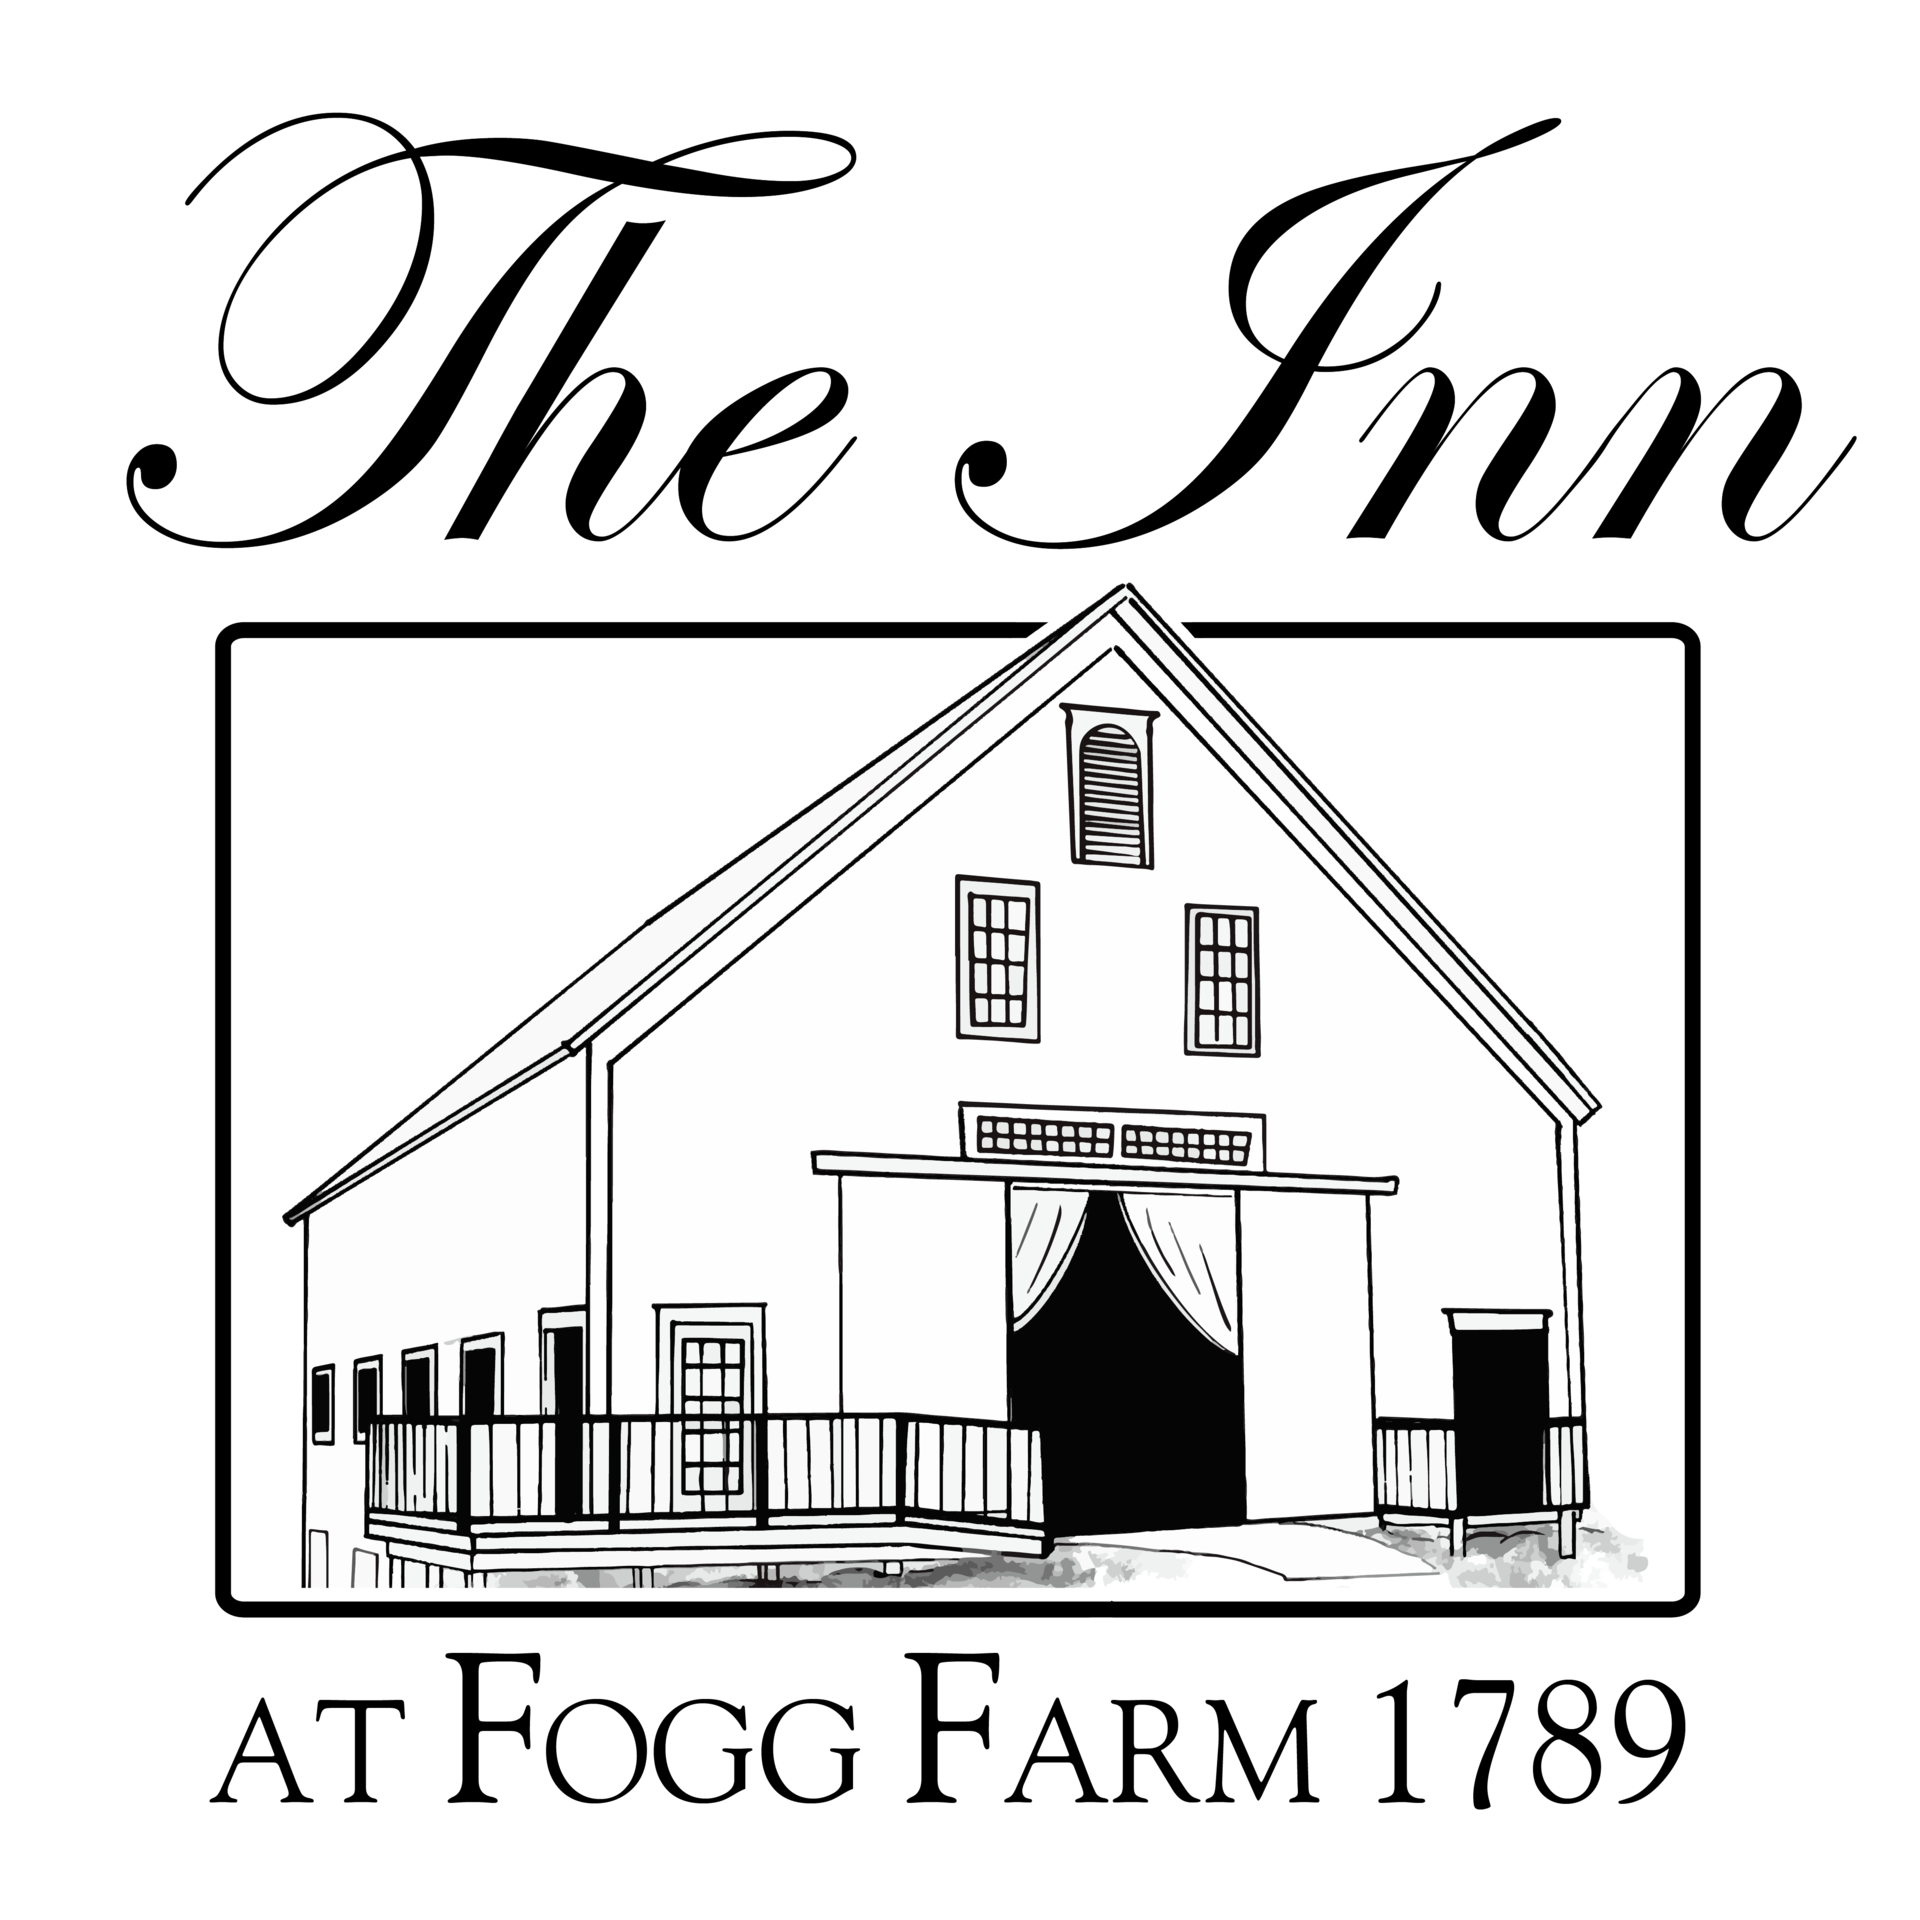 The Inn at Fogg Farm in Gray, Maine